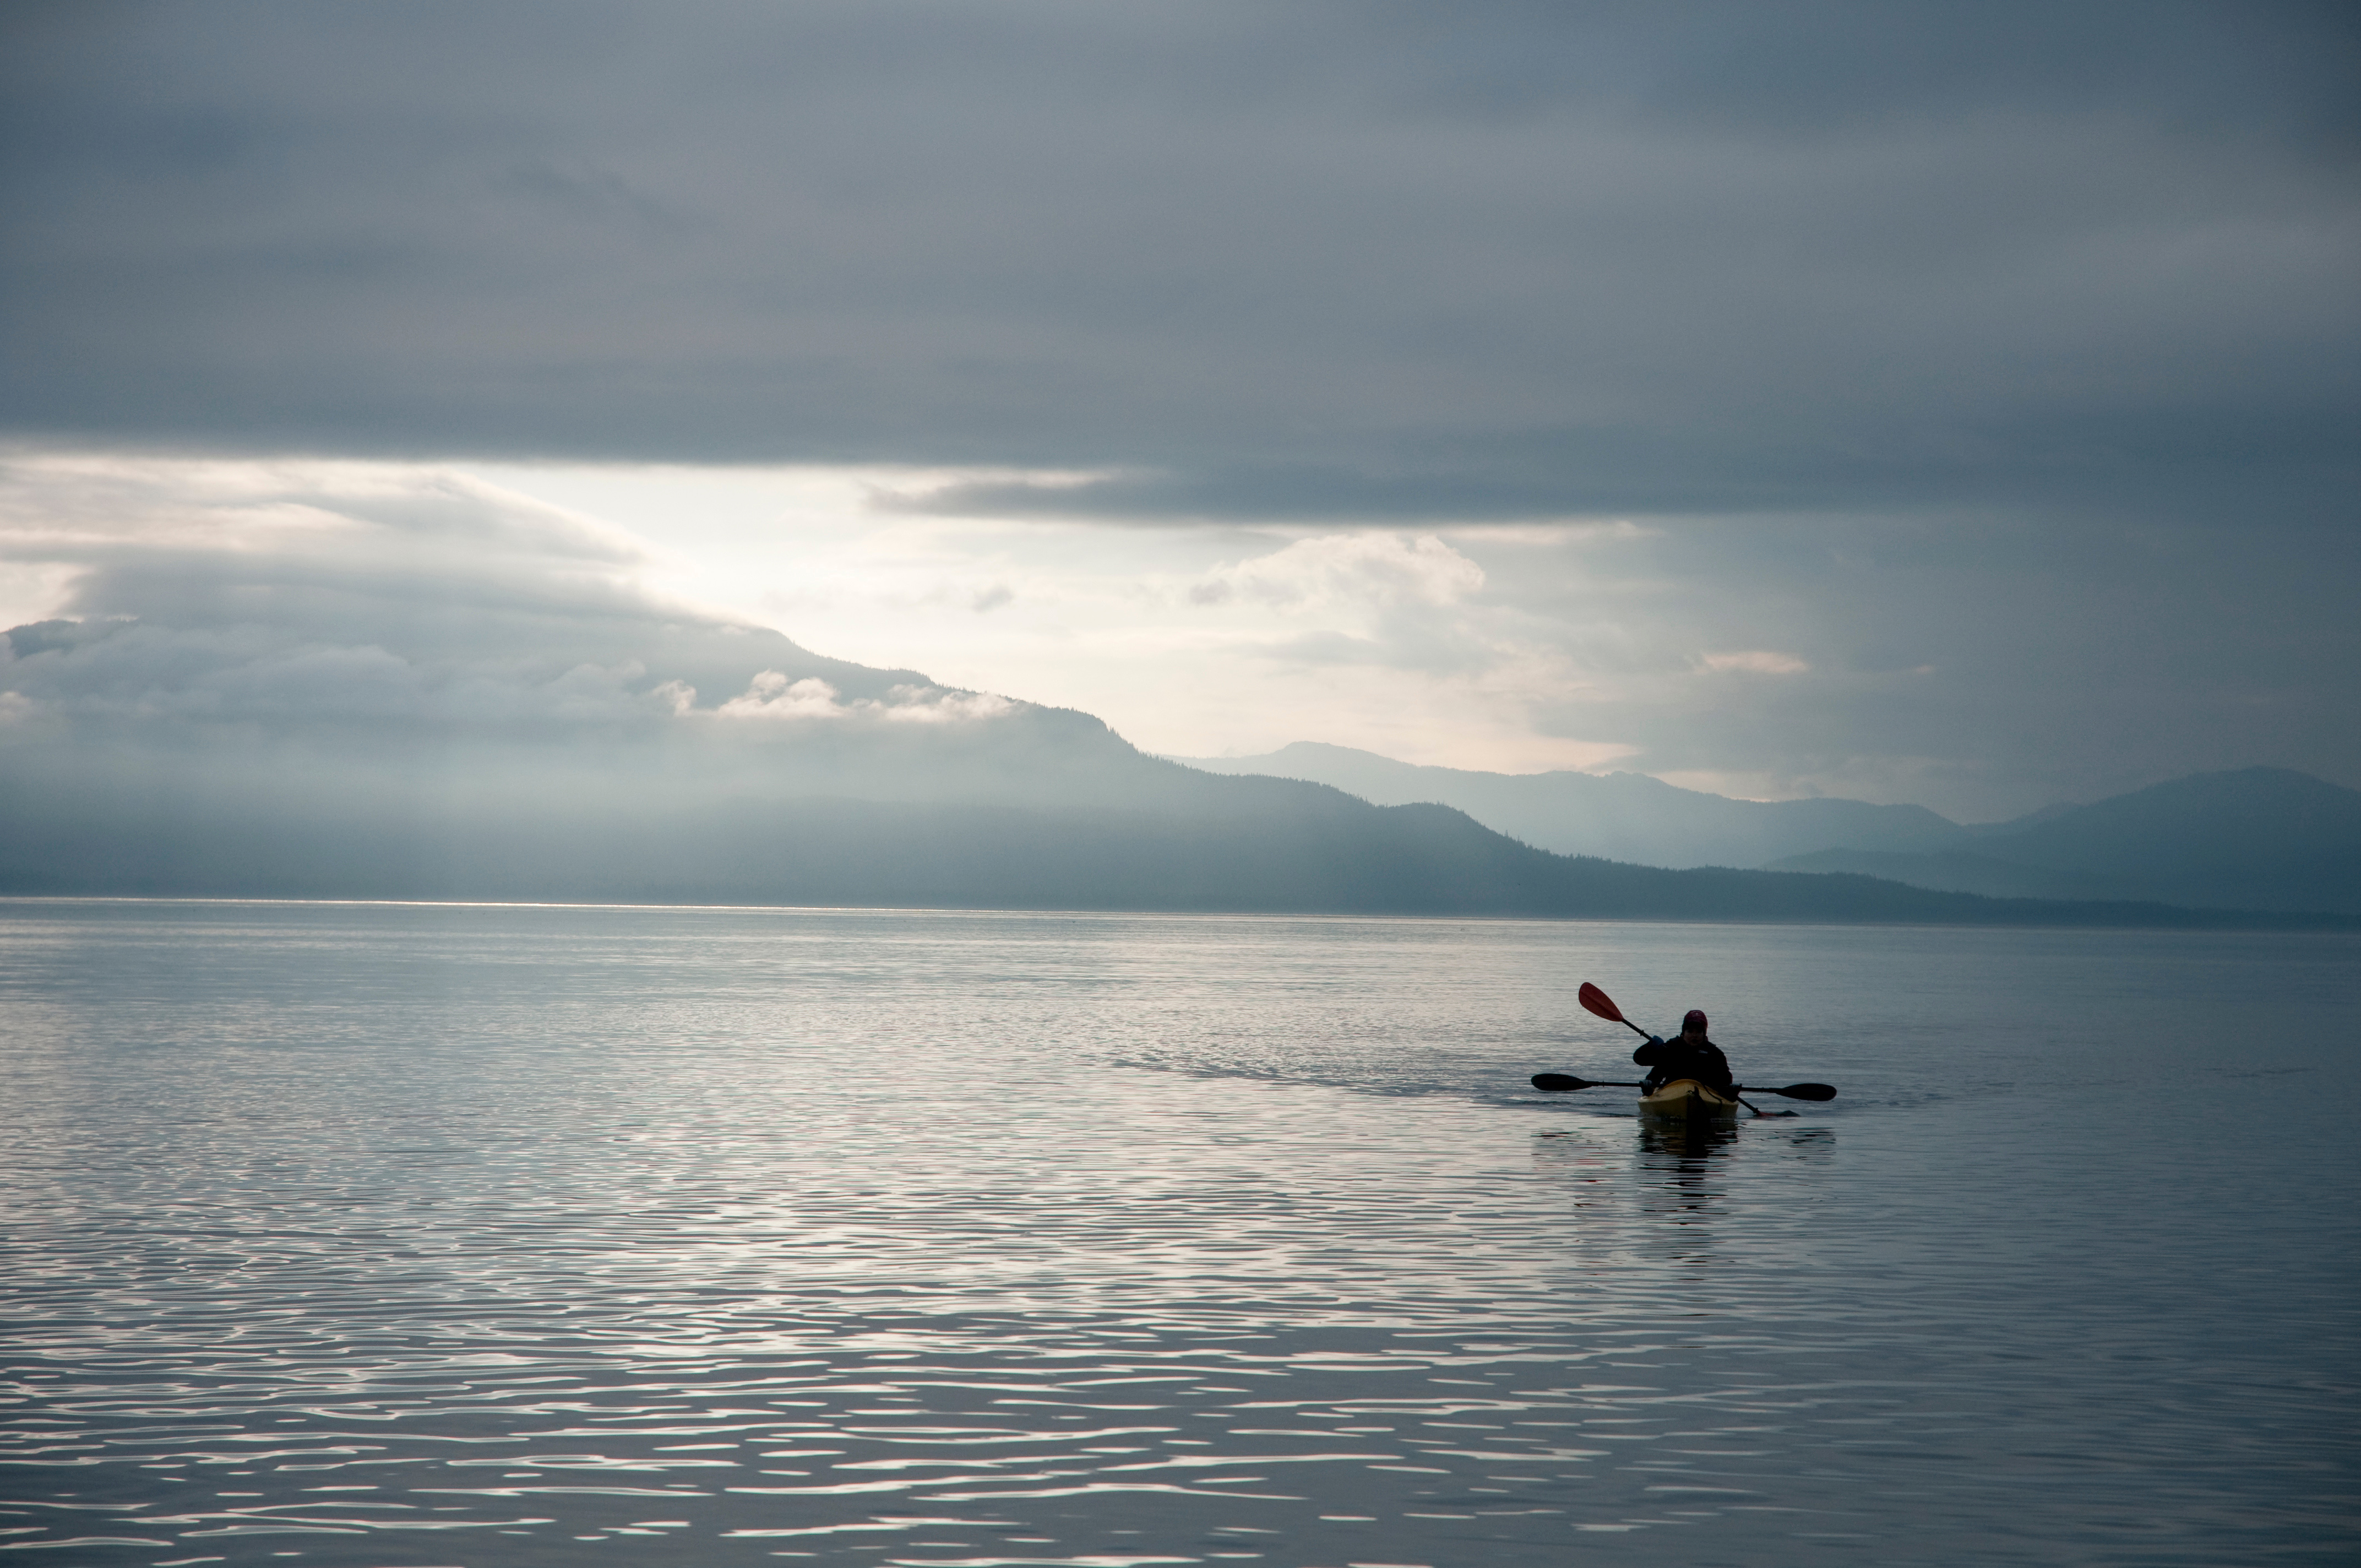 kayaking in the Alaskan waters